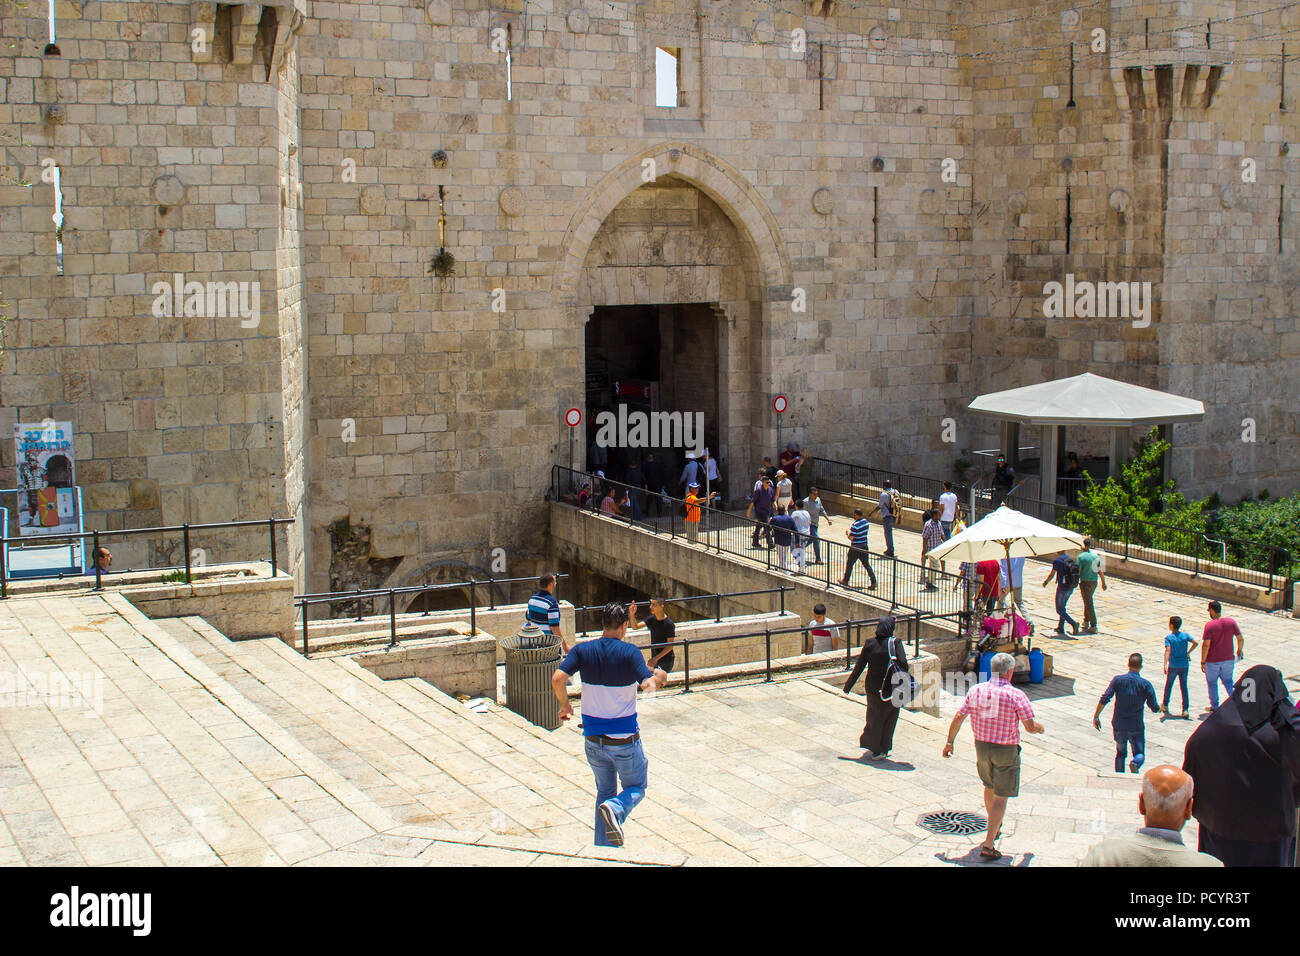 11 mai 2018 Les habitants et les touristes descendent les marches de pierre menant à la Porte de Damas dans la vieille ville fortifiée de Jérusalem Israël Banque D'Images